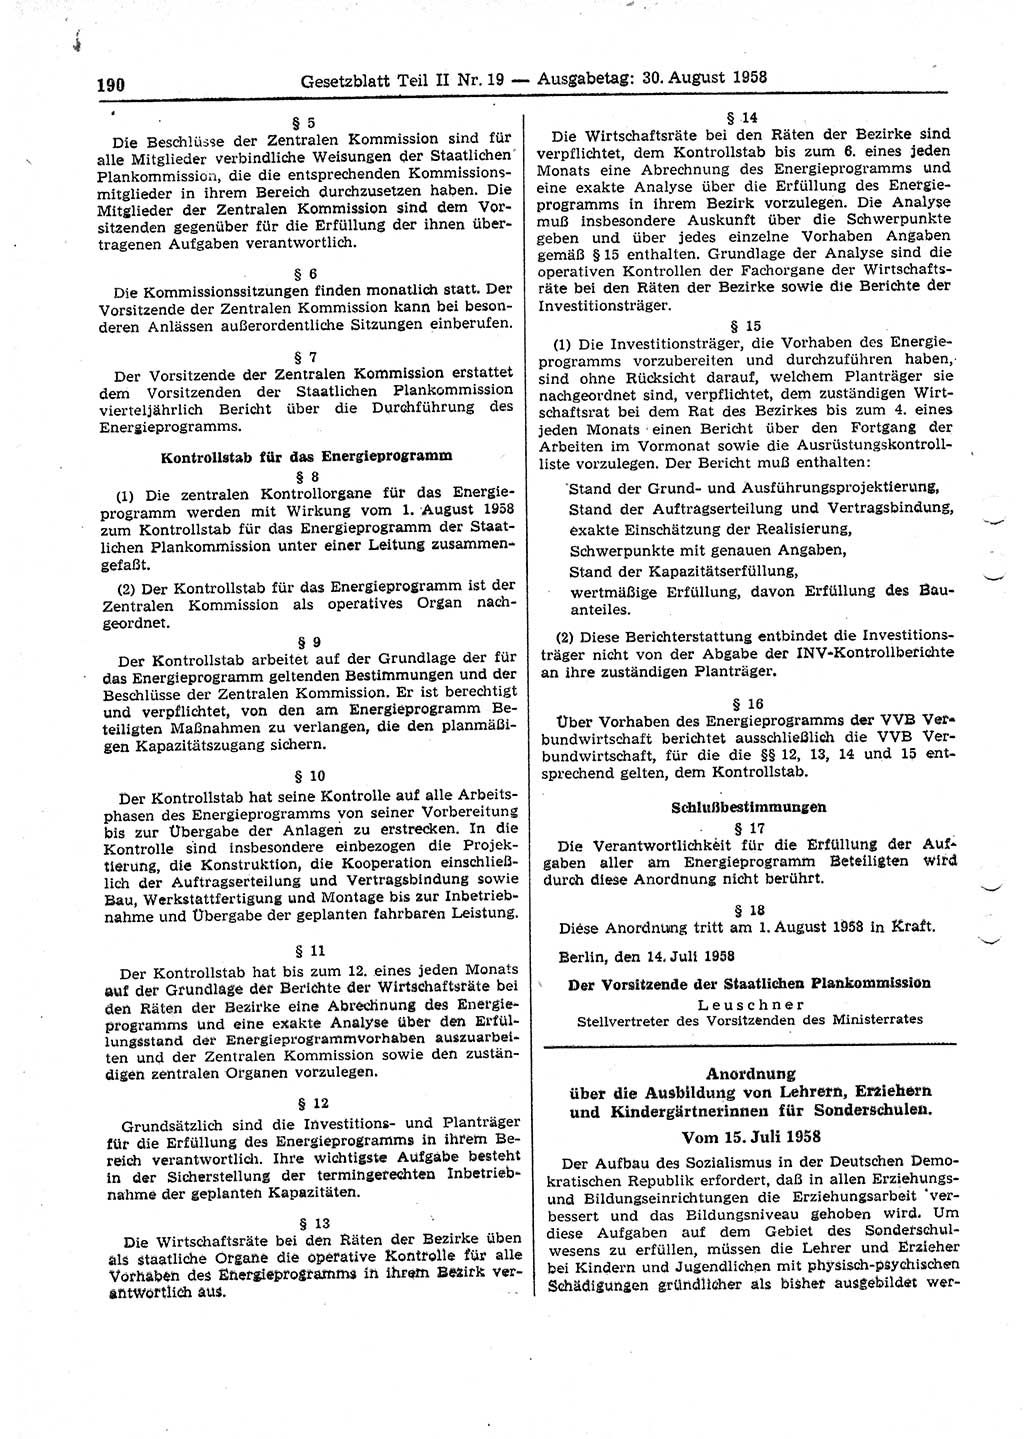 Gesetzblatt (GBl.) der Deutschen Demokratischen Republik (DDR) Teil ⅠⅠ 1958, Seite 190 (GBl. DDR ⅠⅠ 1958, S. 190)